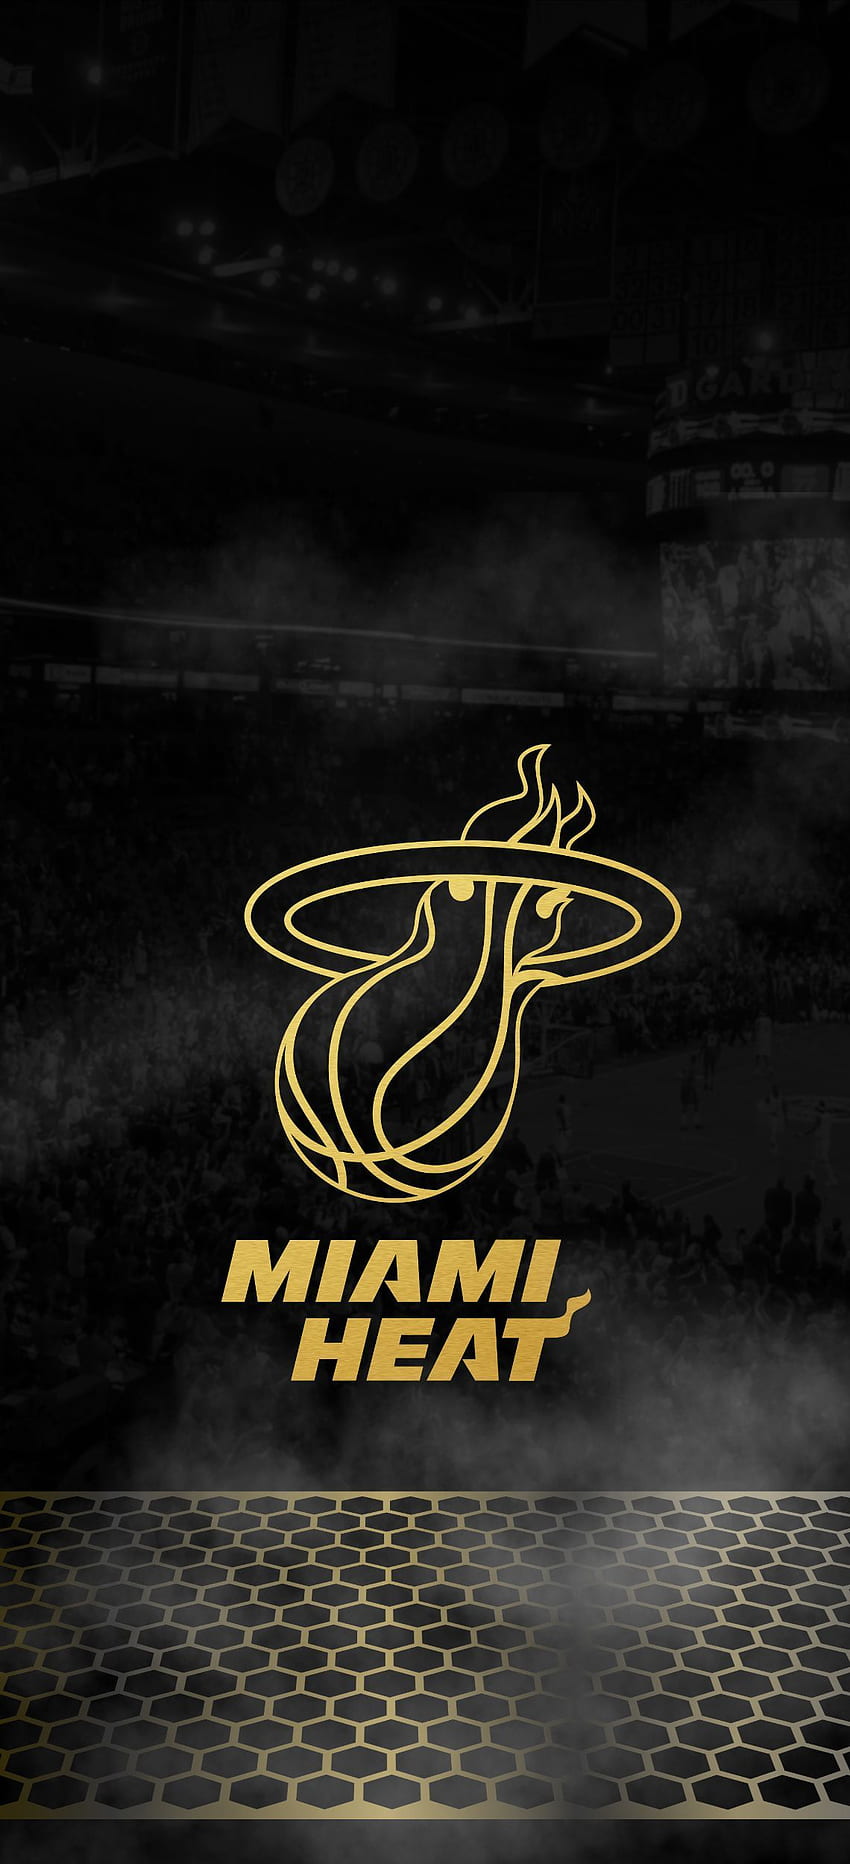 toko olahraga. gelembung merah. Miami heat, seni bola basket NBA, Basket, Cool Miami Heat wallpaper ponsel HD